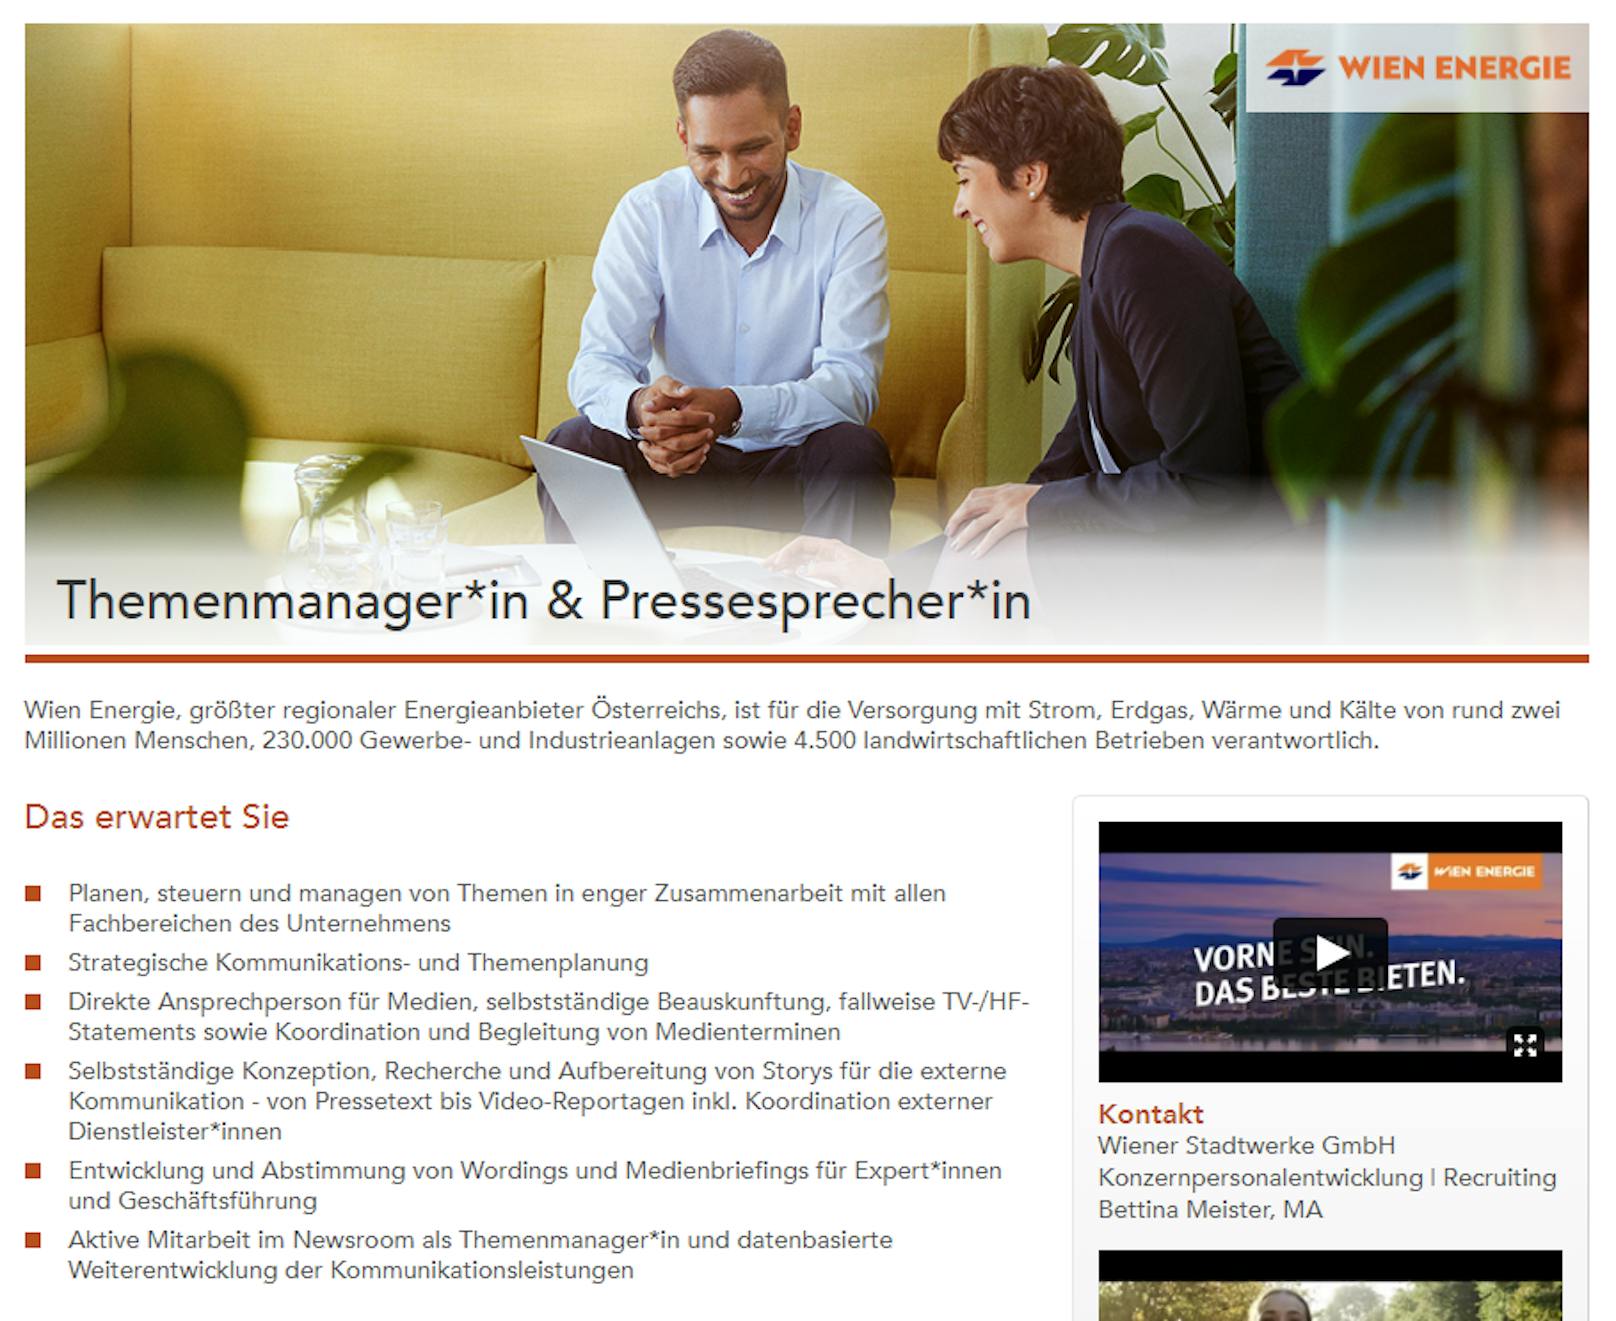 Die Wien Energie sucht einen "Themenmanager &amp; Pressesprecher"